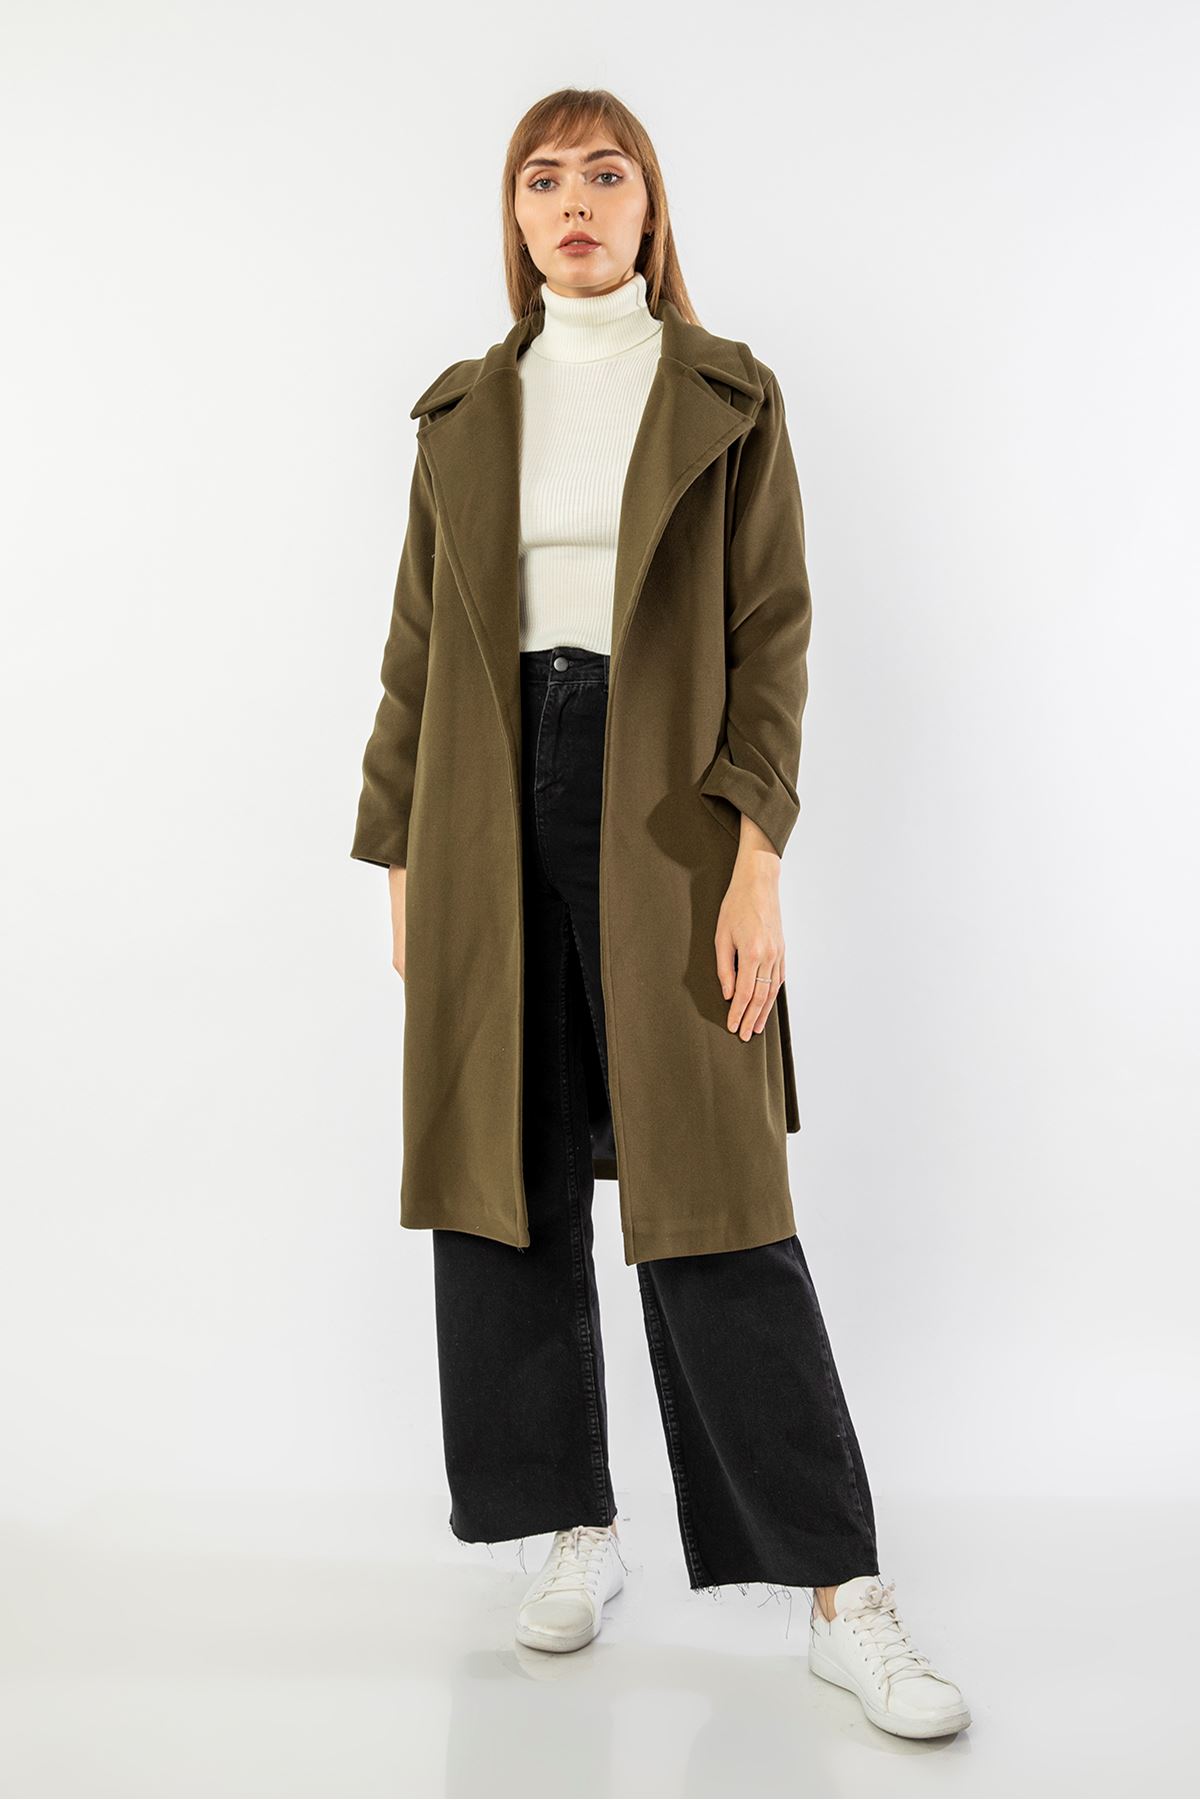 Long Sleeve Revere Collar Long Belted Women'S Coat - Khaki 